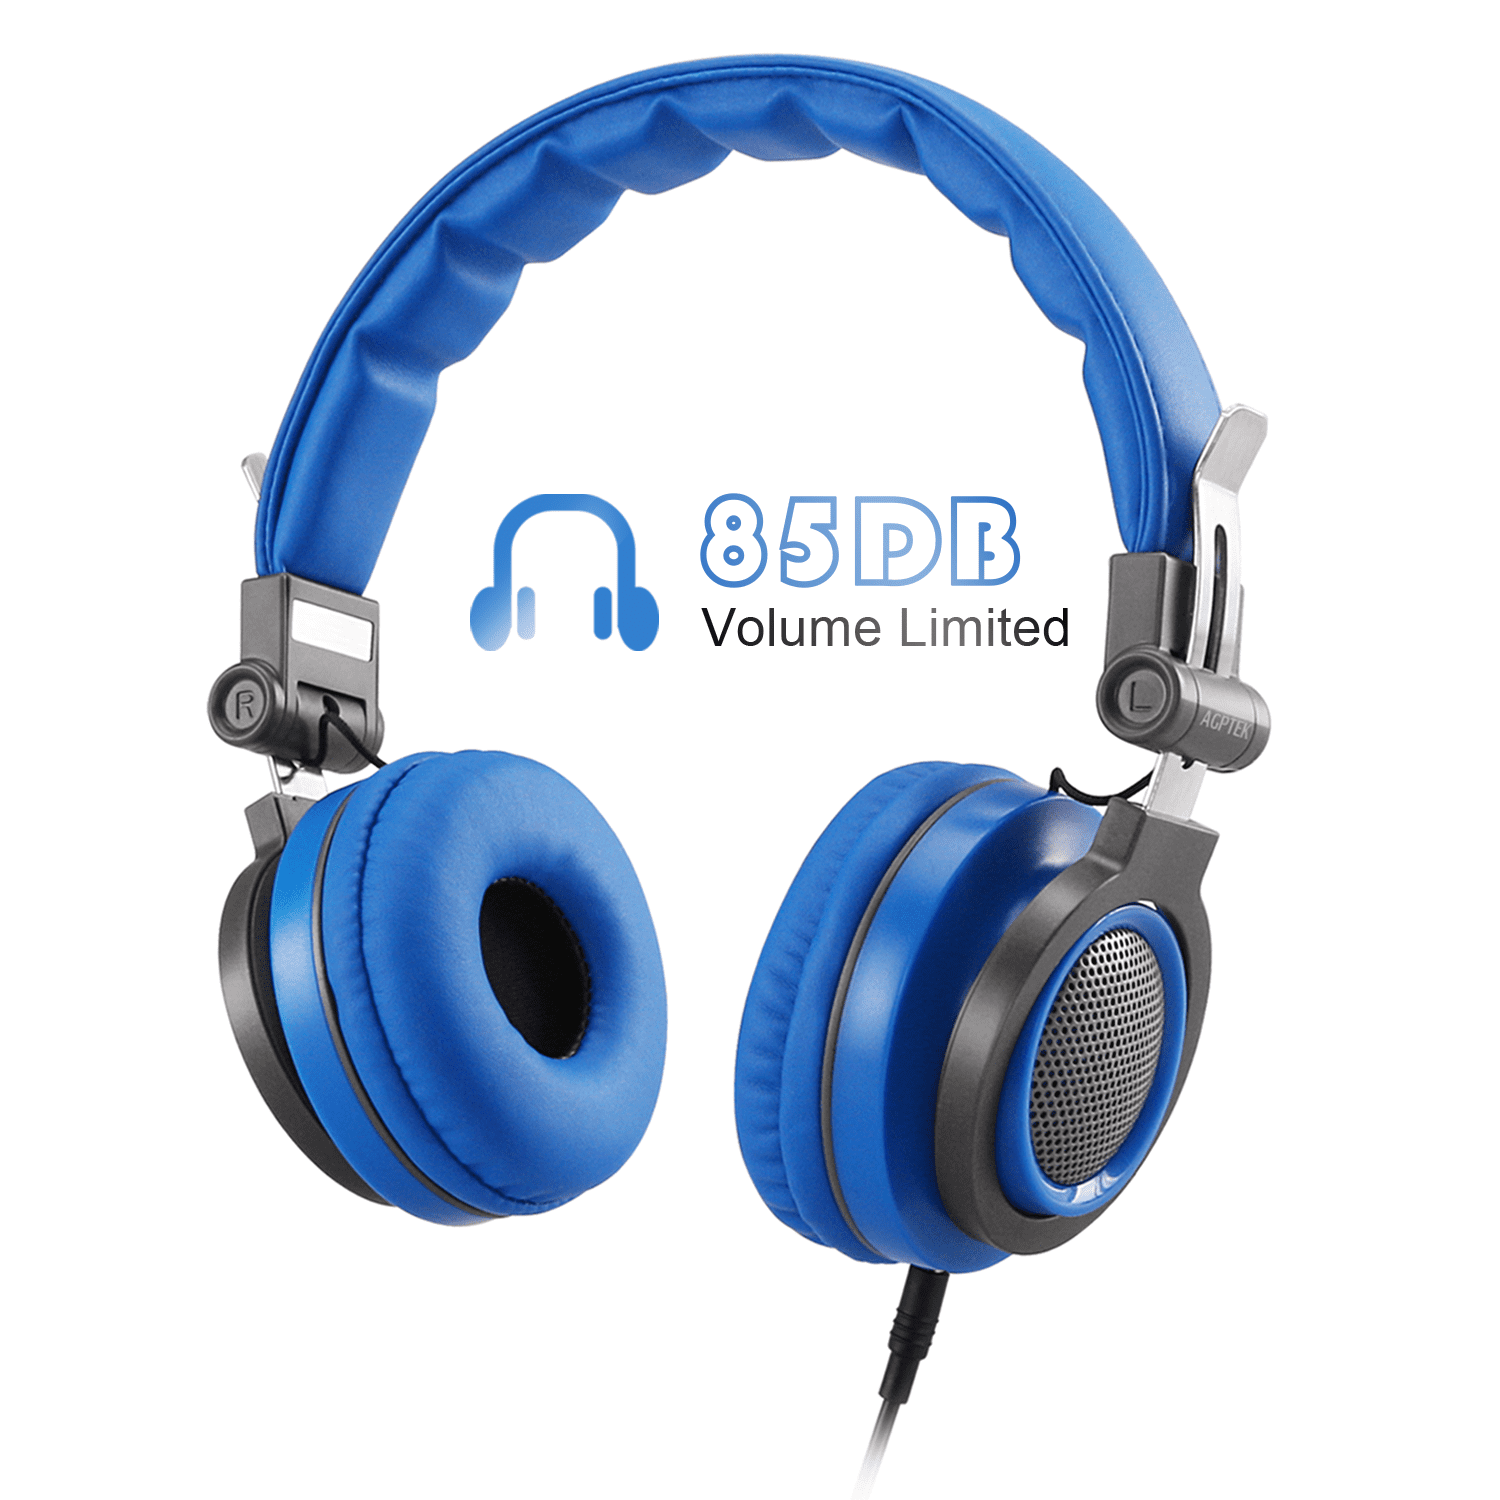 AGPTEK Kids Headphones Over Ear,Wired Children Headsets 85dB Volume Limited, Lightweight ,Adjustable & Foldable